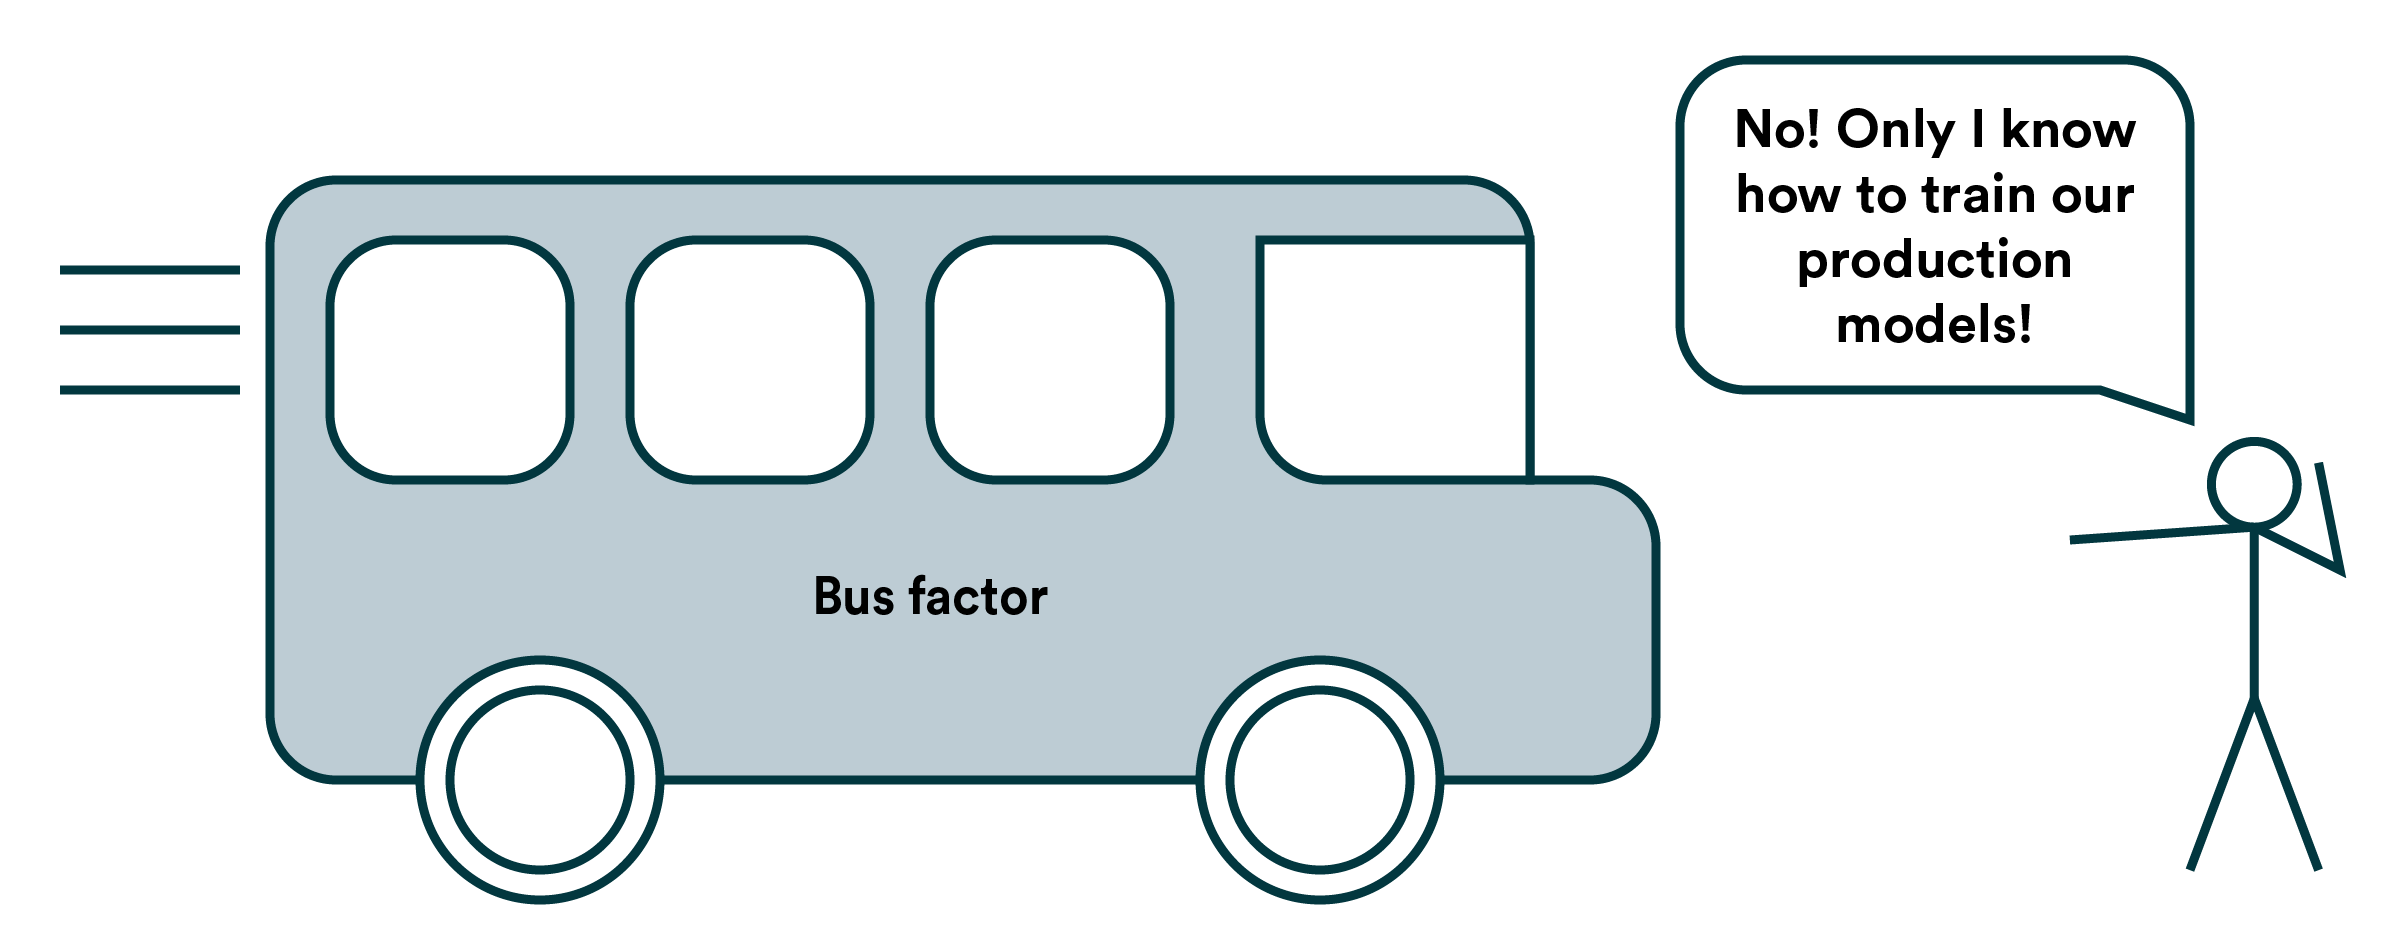 Bus Factor